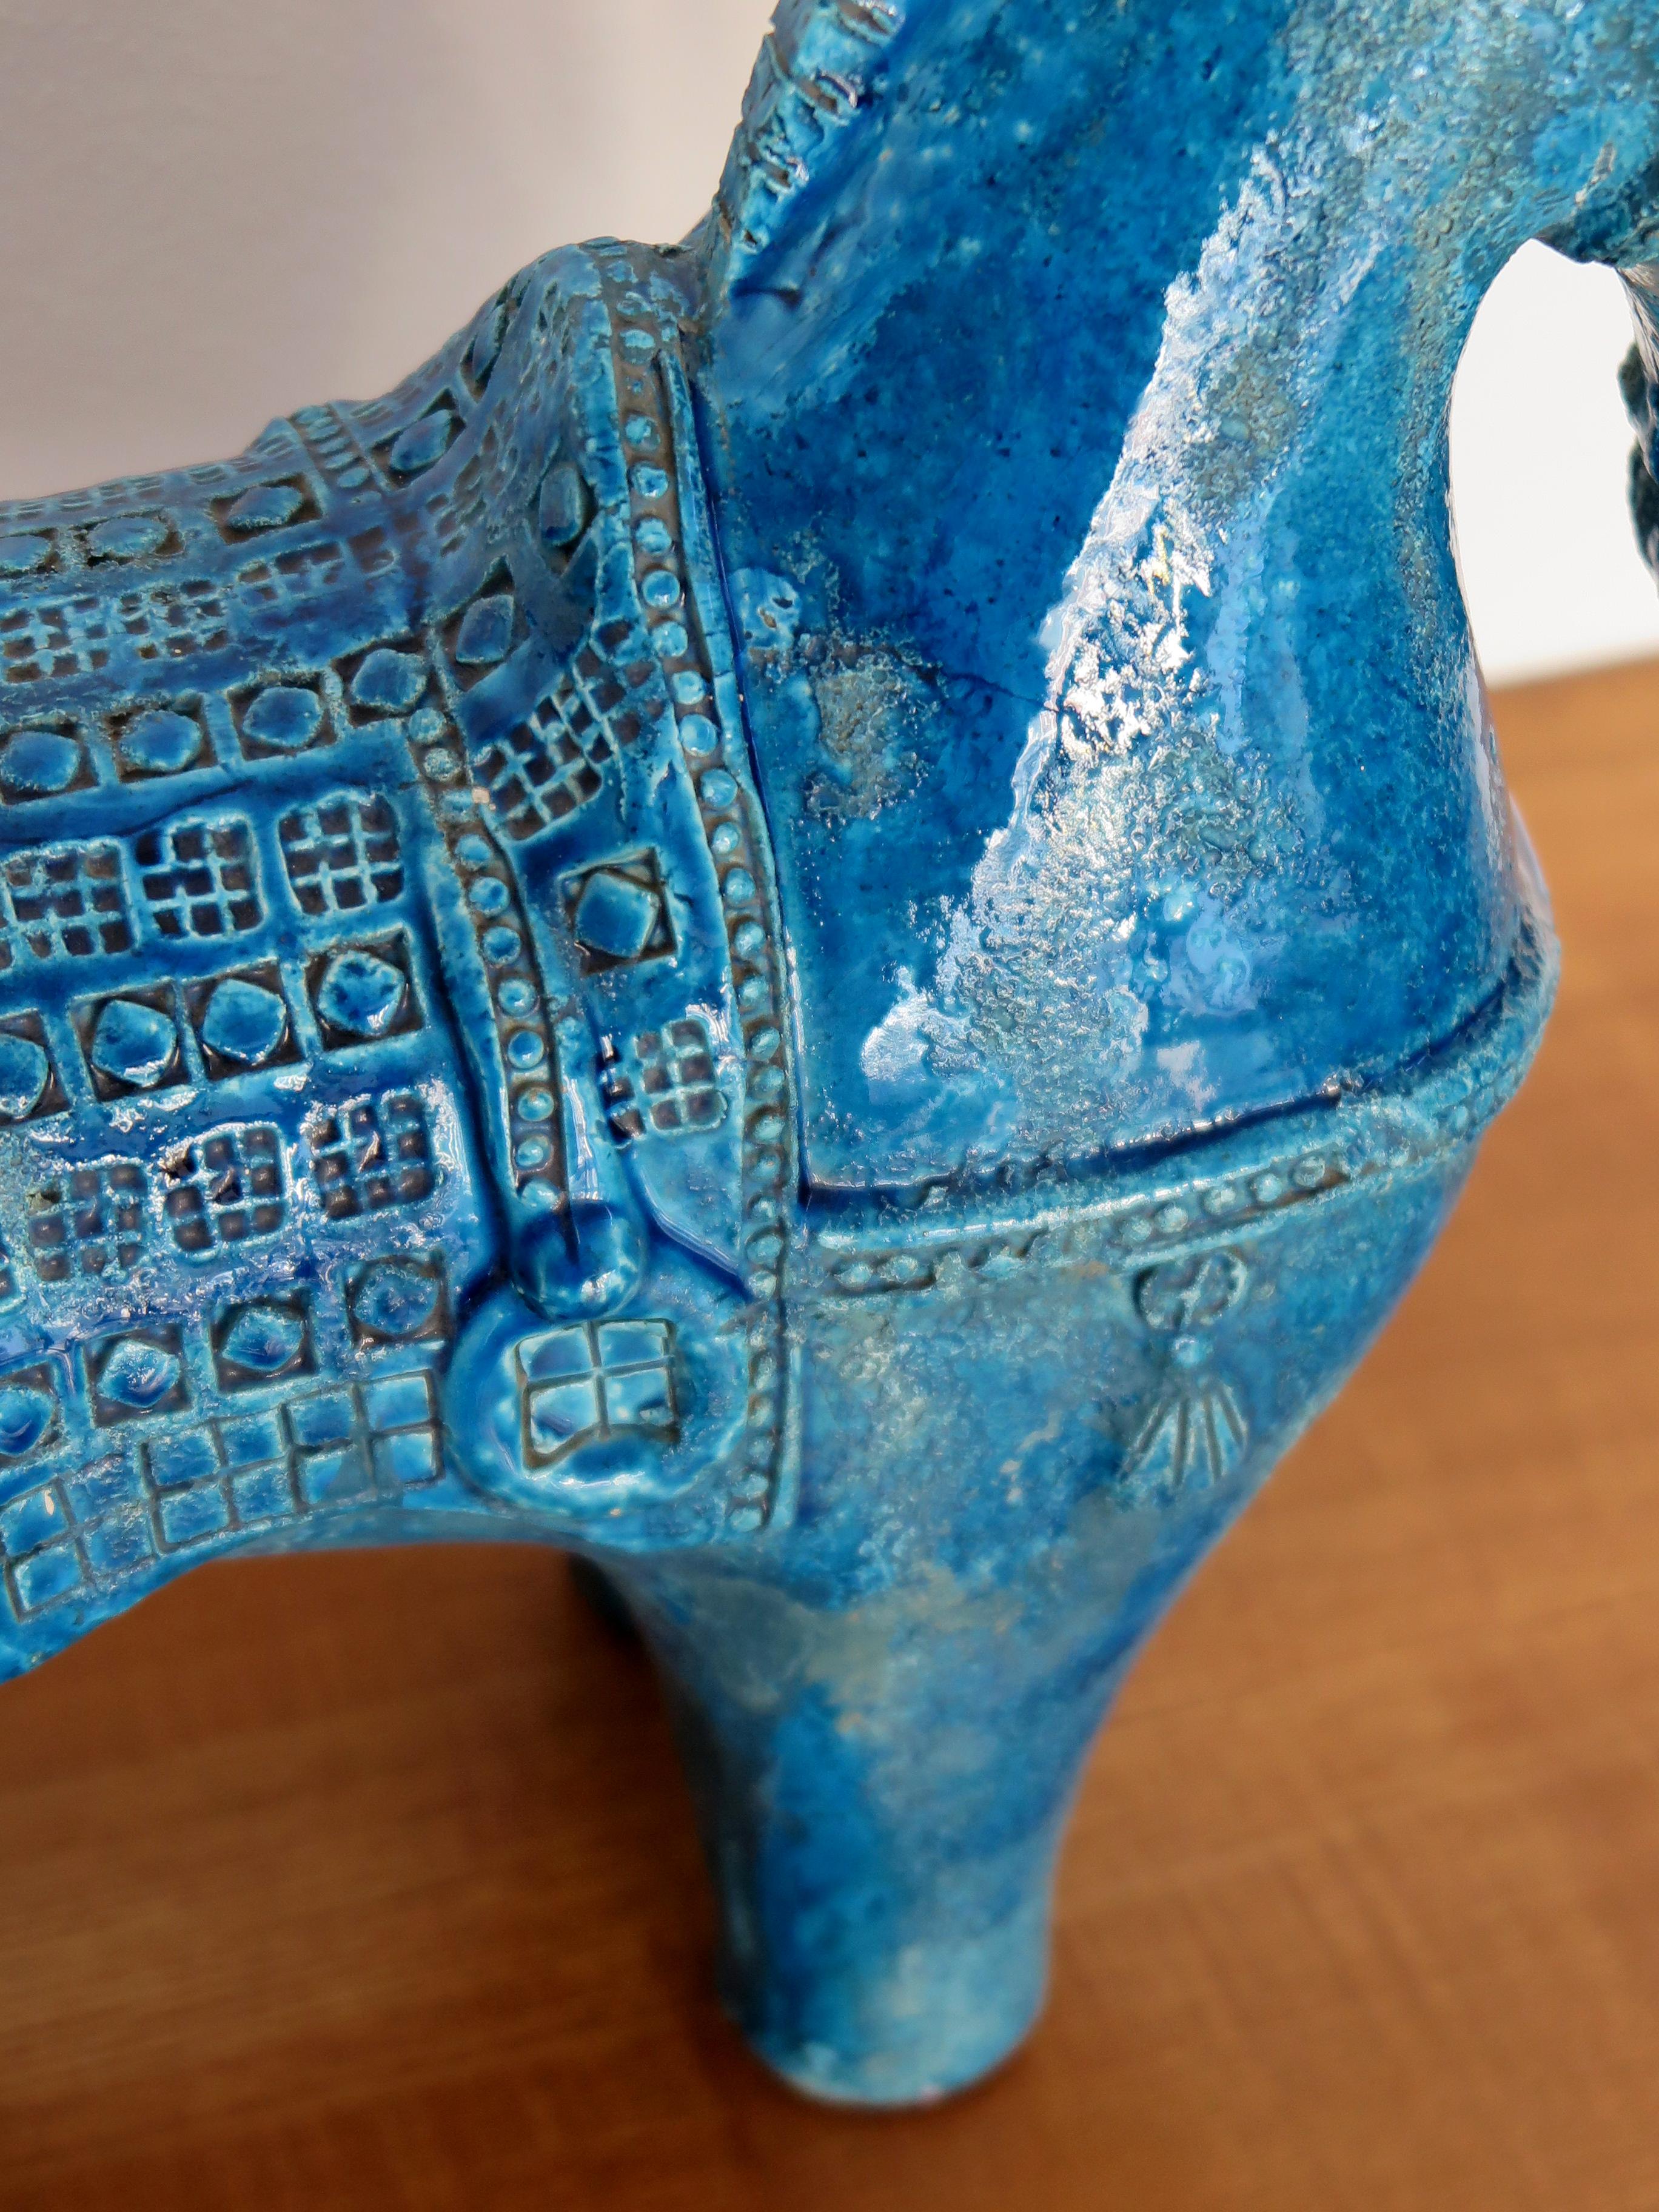 Aldo Londi for Bitossi Italian Midcentury Blue Sculpture Ceramic Horse 1960s For Sale 5